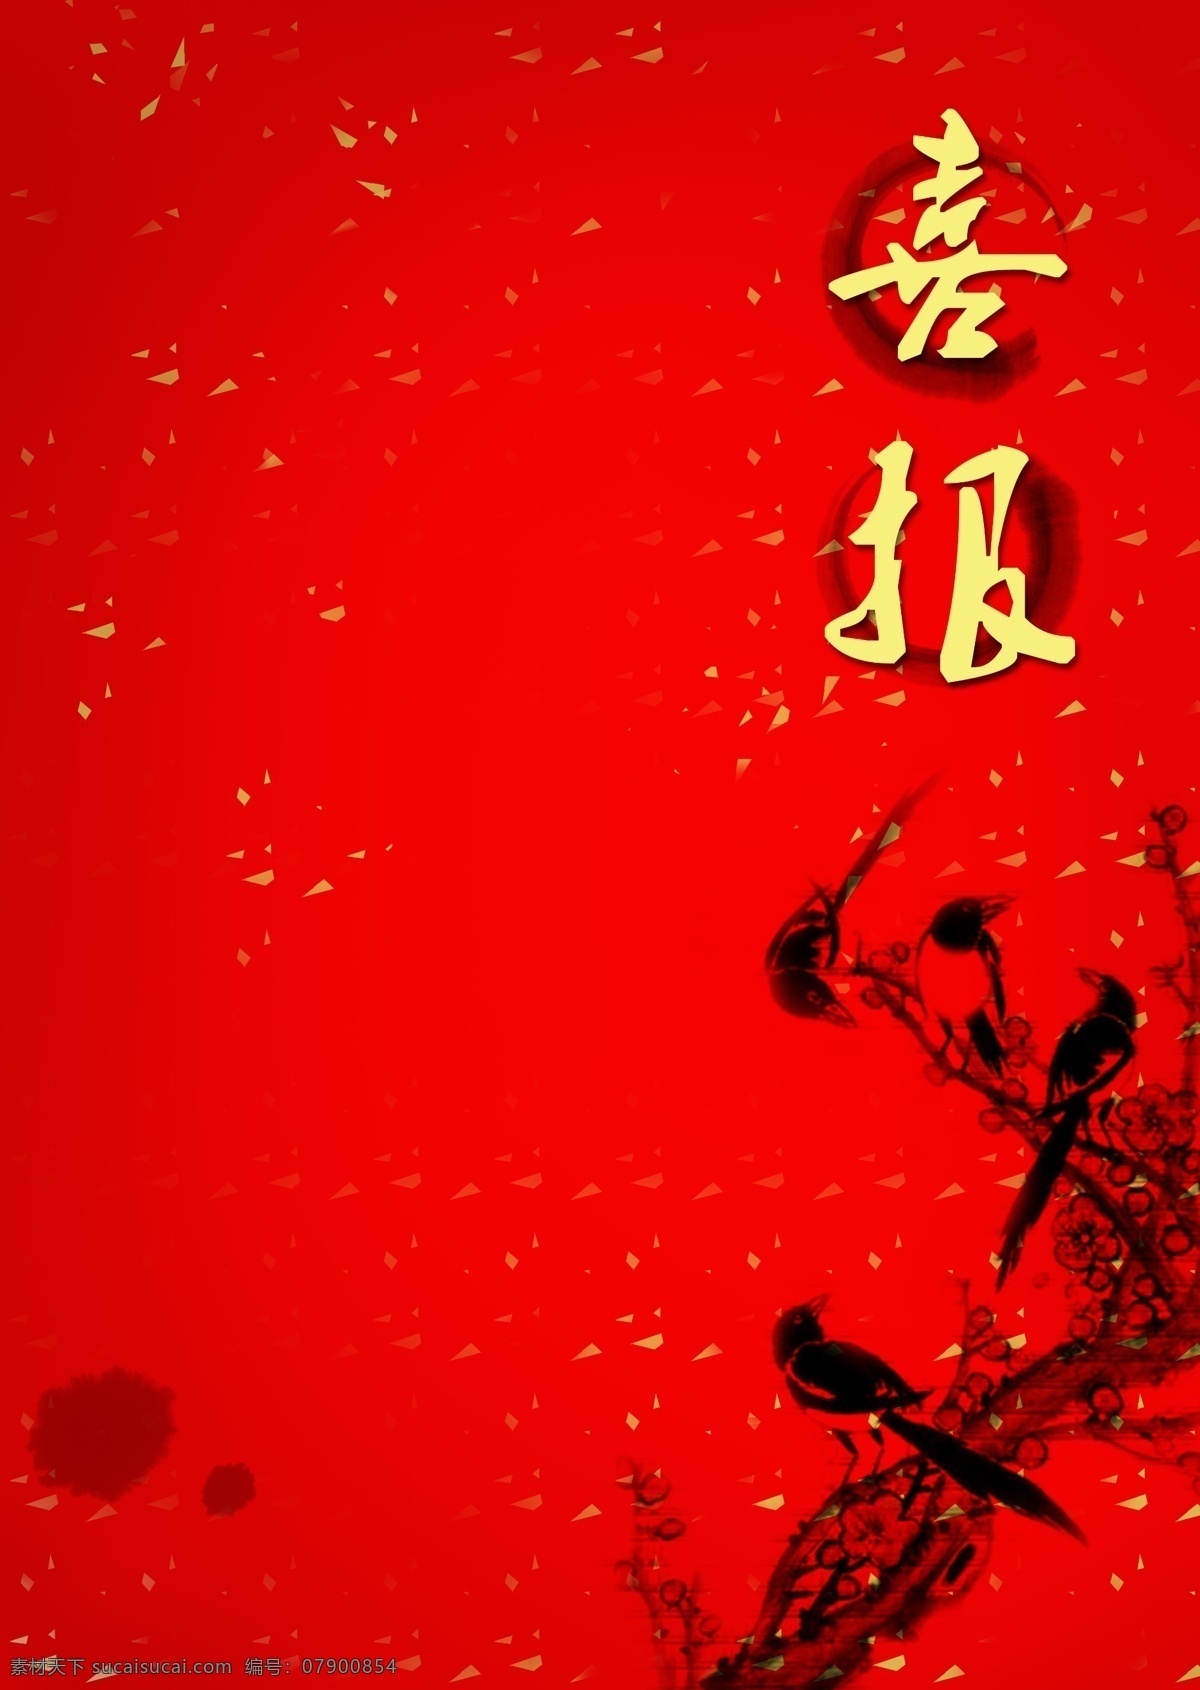 中国 风 红色 水墨画 喜报 背景 中国风